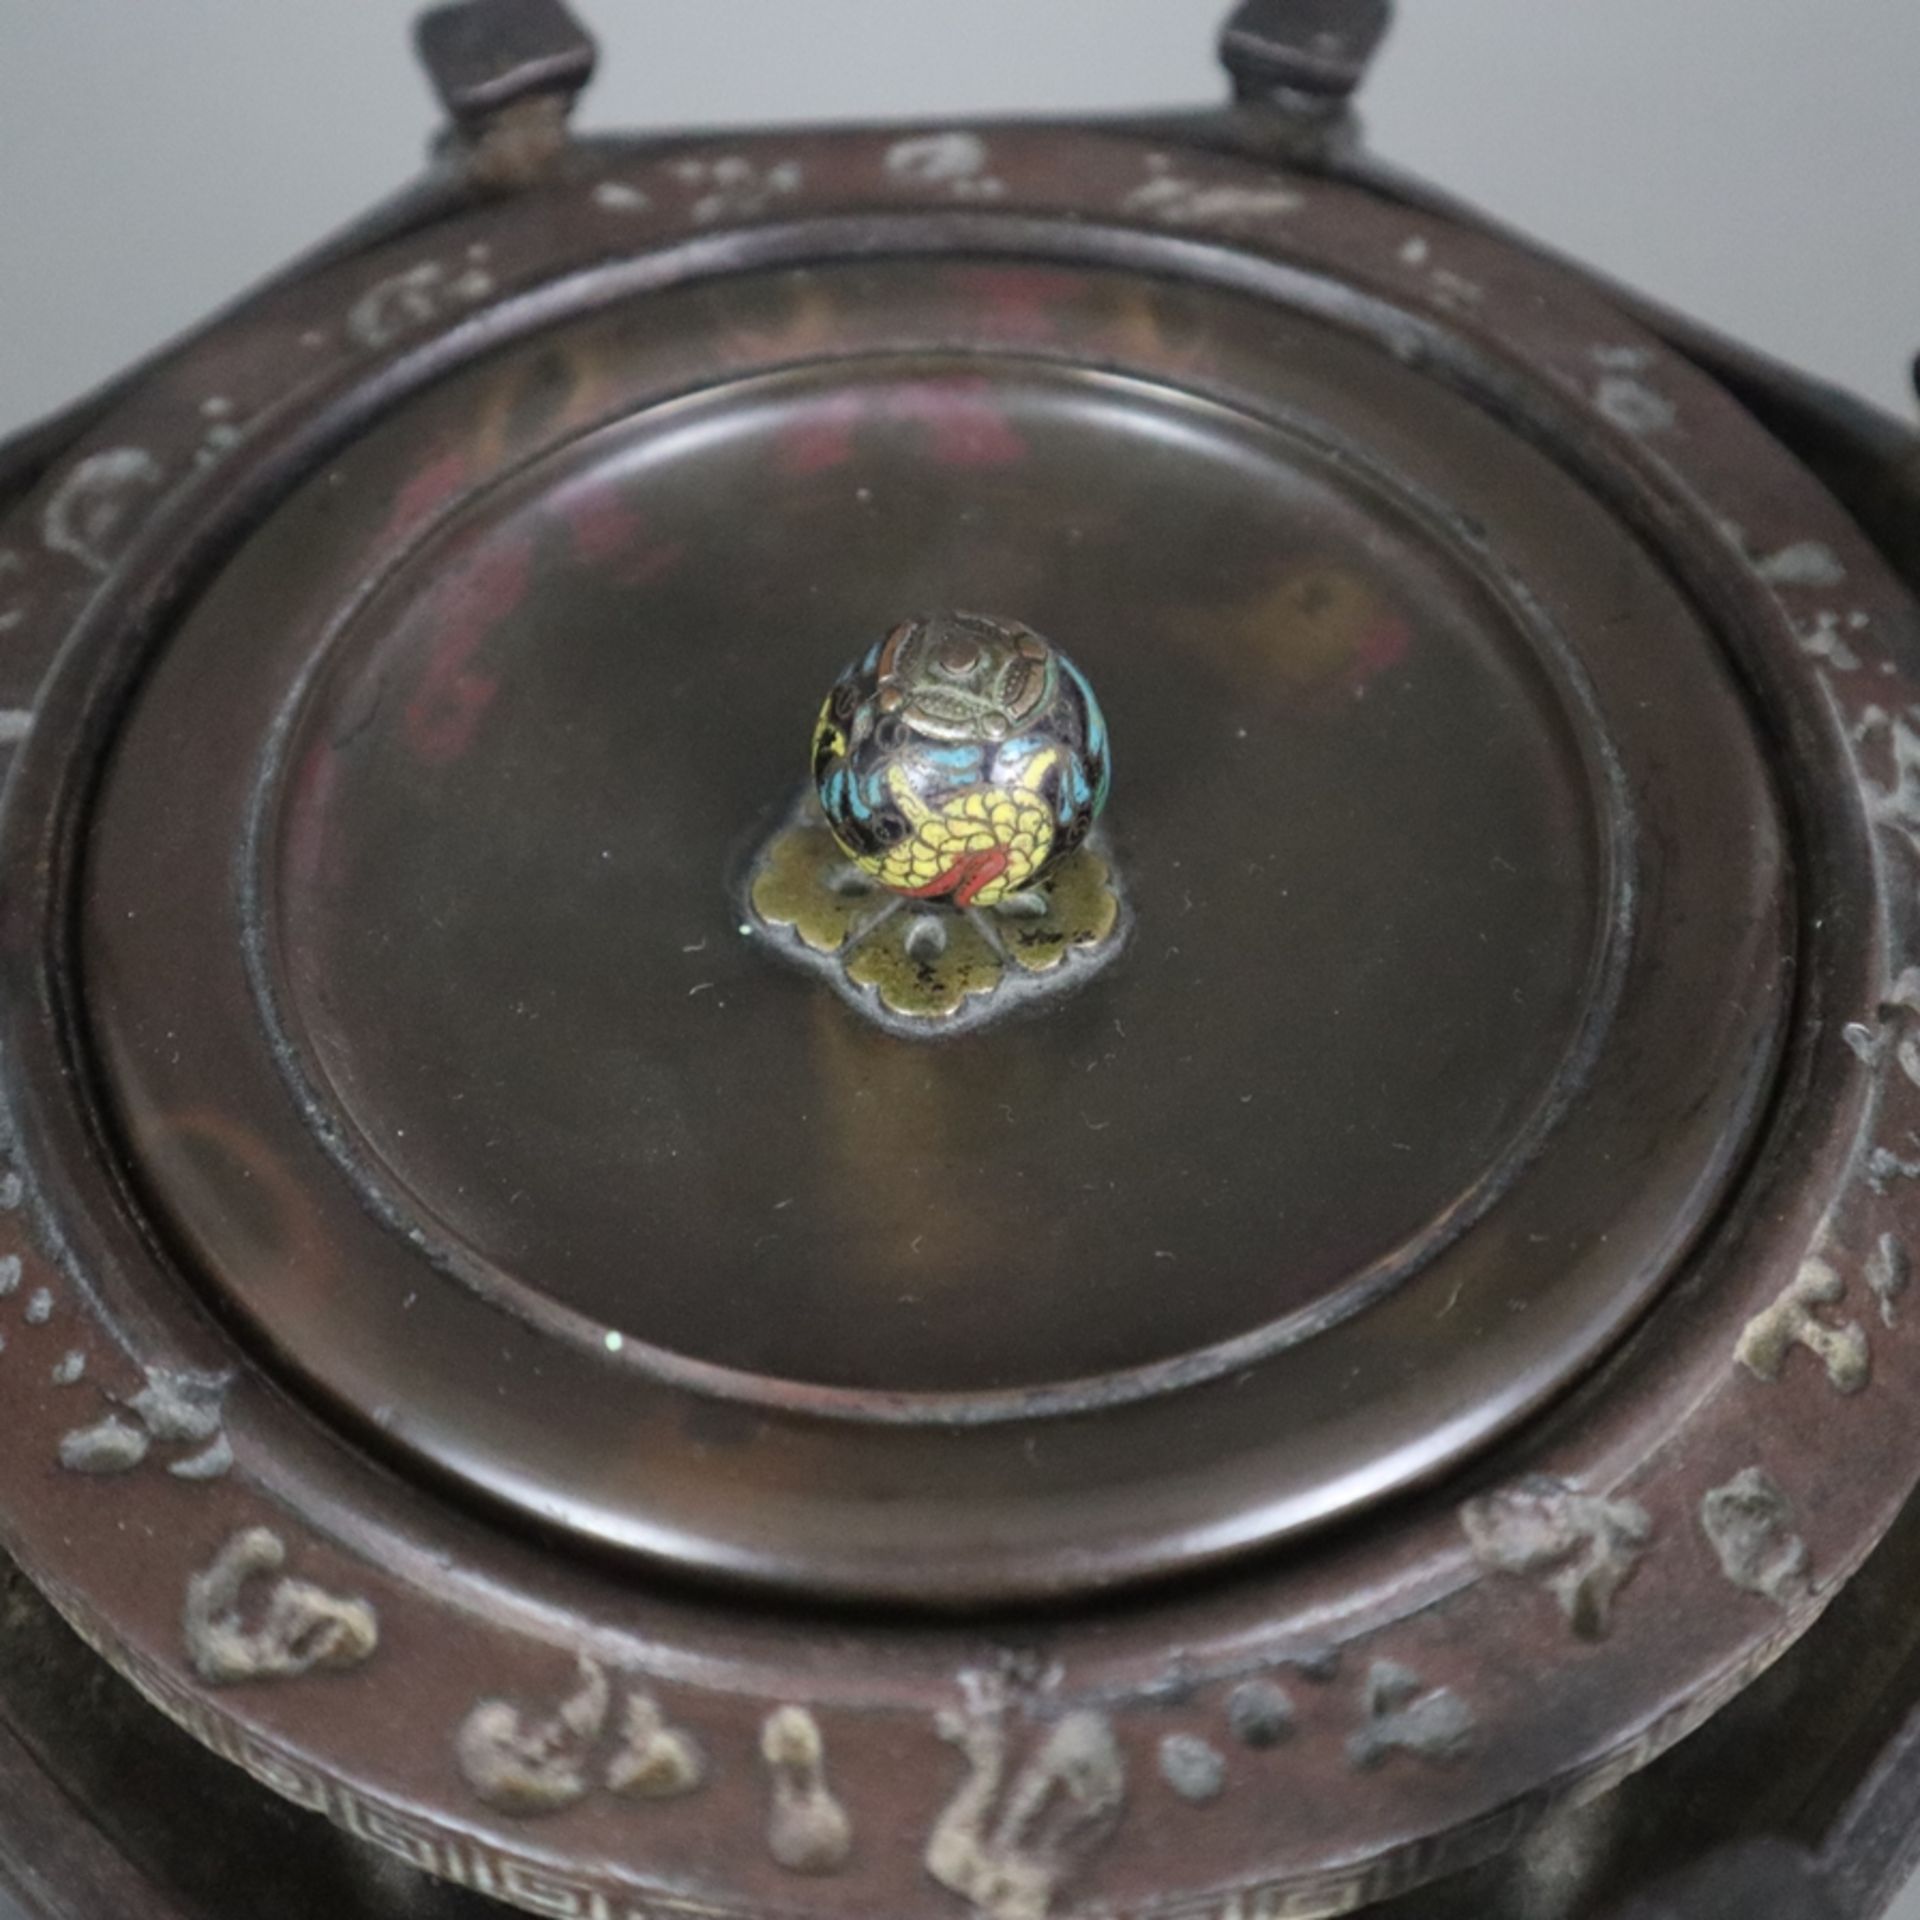 Schwerer Tetsubin - Wasserkessel für die Teezeremonie, Japan, Taishō-/Shōwa-Zeit, Gusseisen, zentra - Bild 2 aus 14